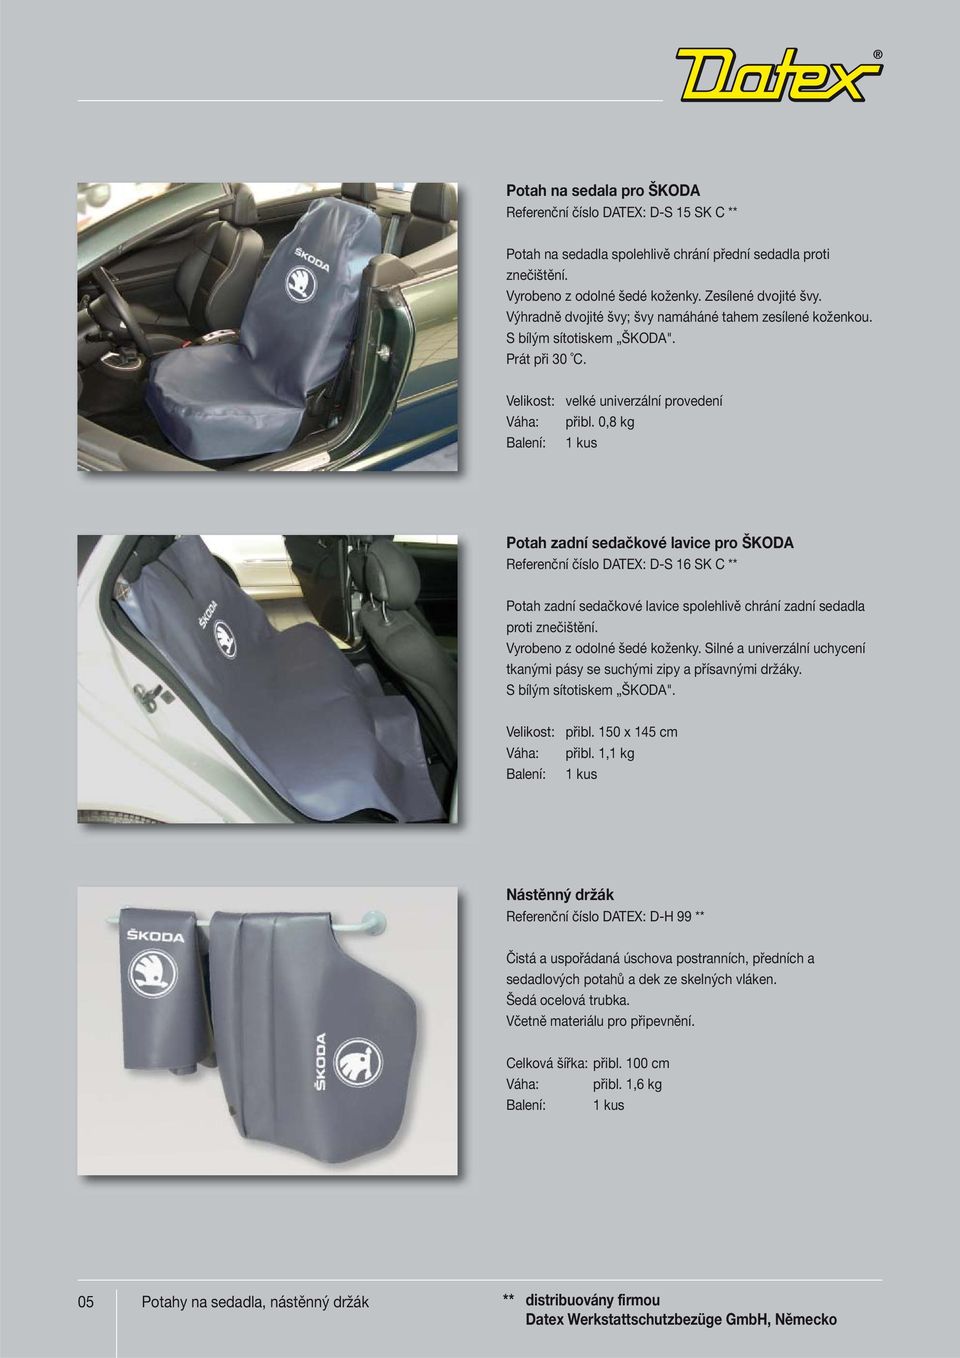 0,8 kg Potah zadní sedačkové lavice pro ŠKODA Referenční číslo DATEX: D-S 16 SK C ** Potah zadní sedačkové lavice spolehlivě chrání zadní sedadla proti znečištění. Vyrobeno z odolné šedé koženky.